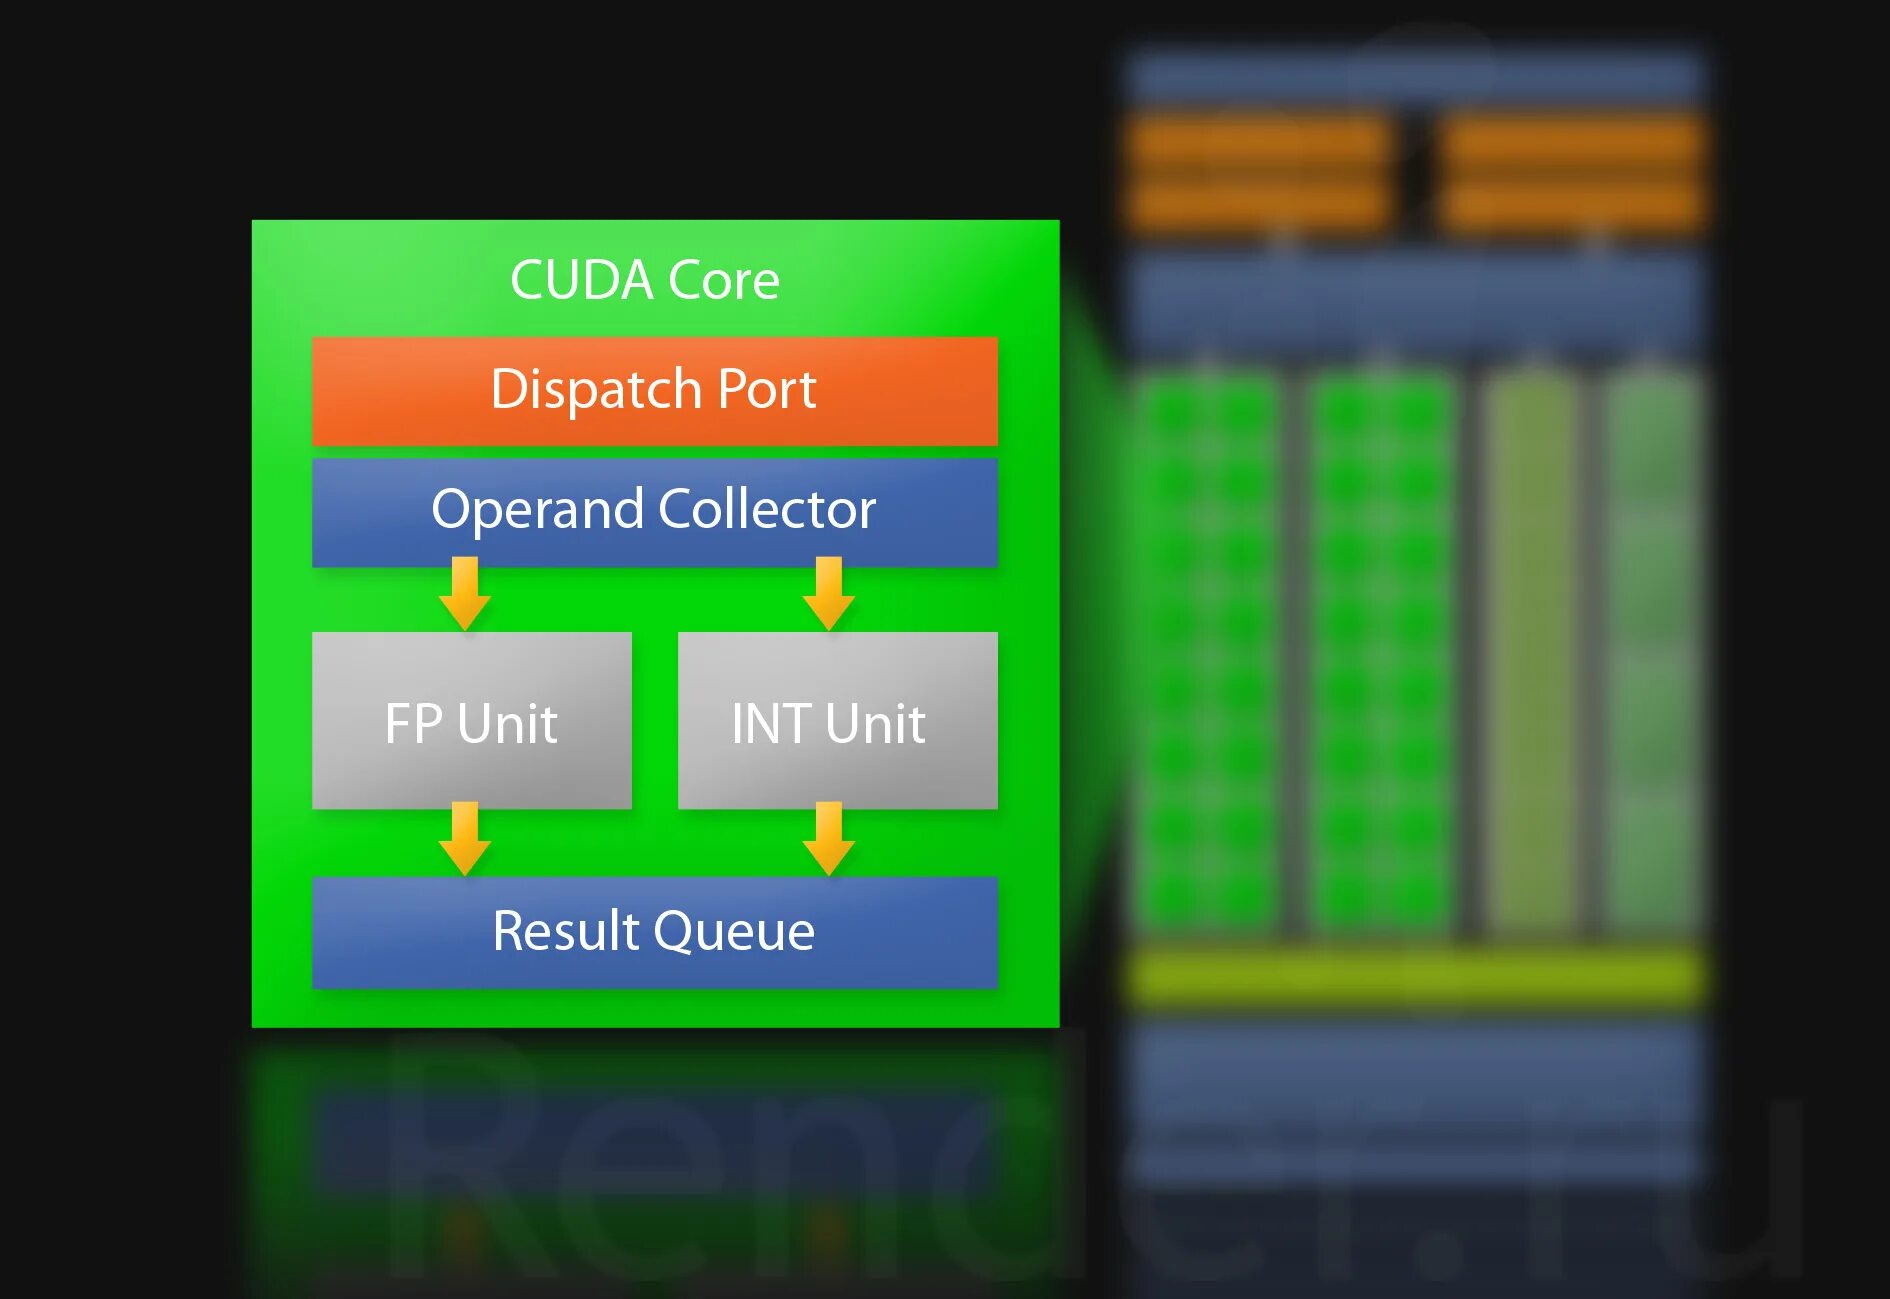 CUDA ядра. CUDA графические процессоры что это. CUDA ядра в видеокартах. CUDA ядра график. Cuda call